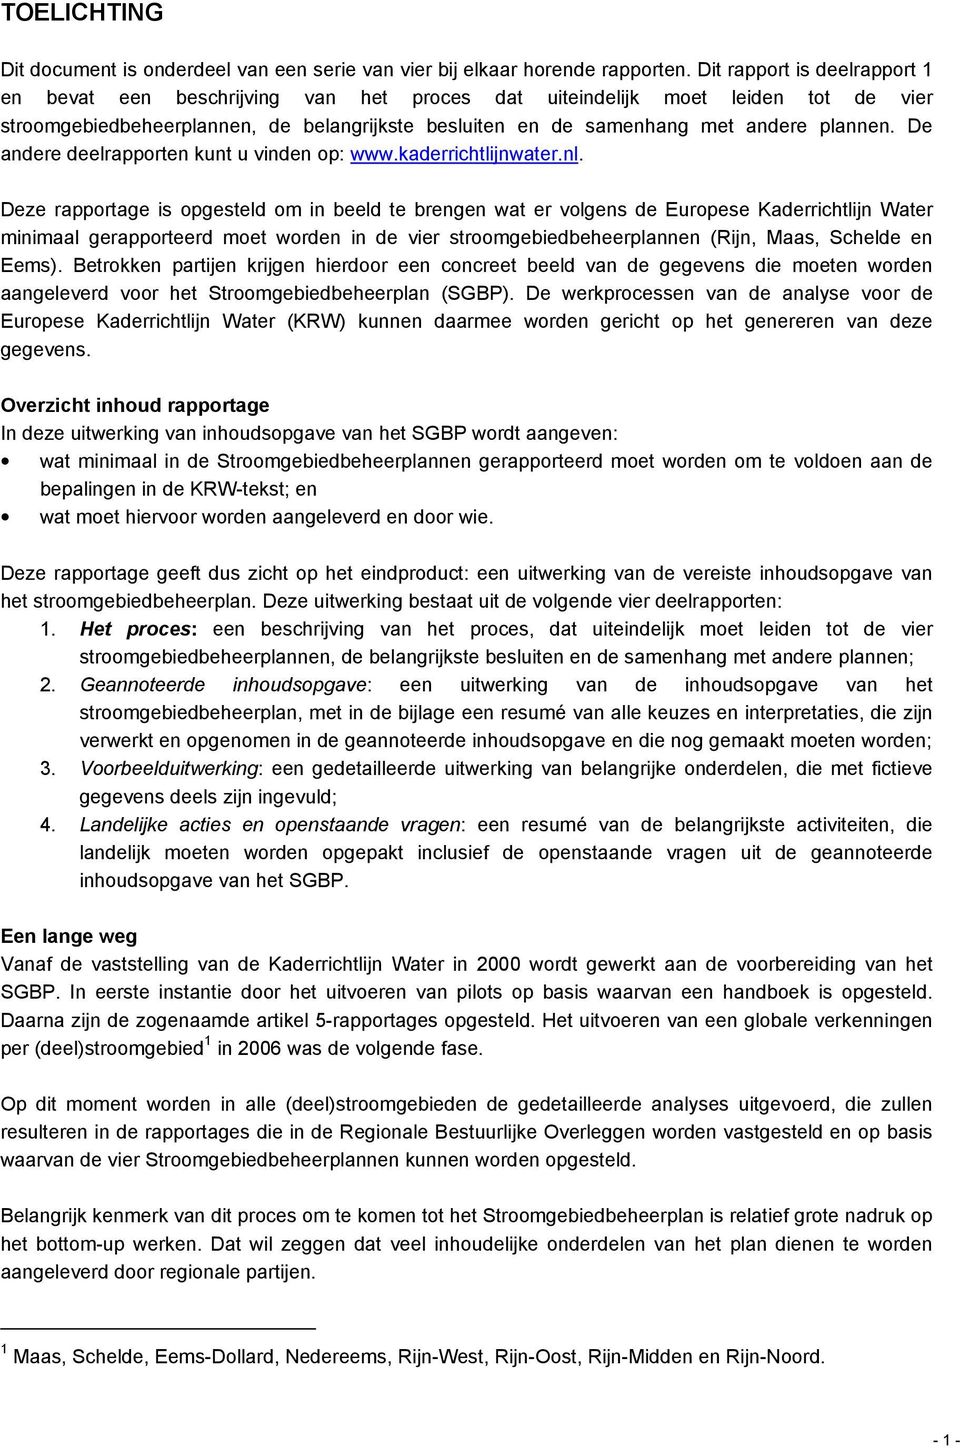 De andere deelrapporten kunt u vinden op: www.kaderrichtlijnwater.nl.